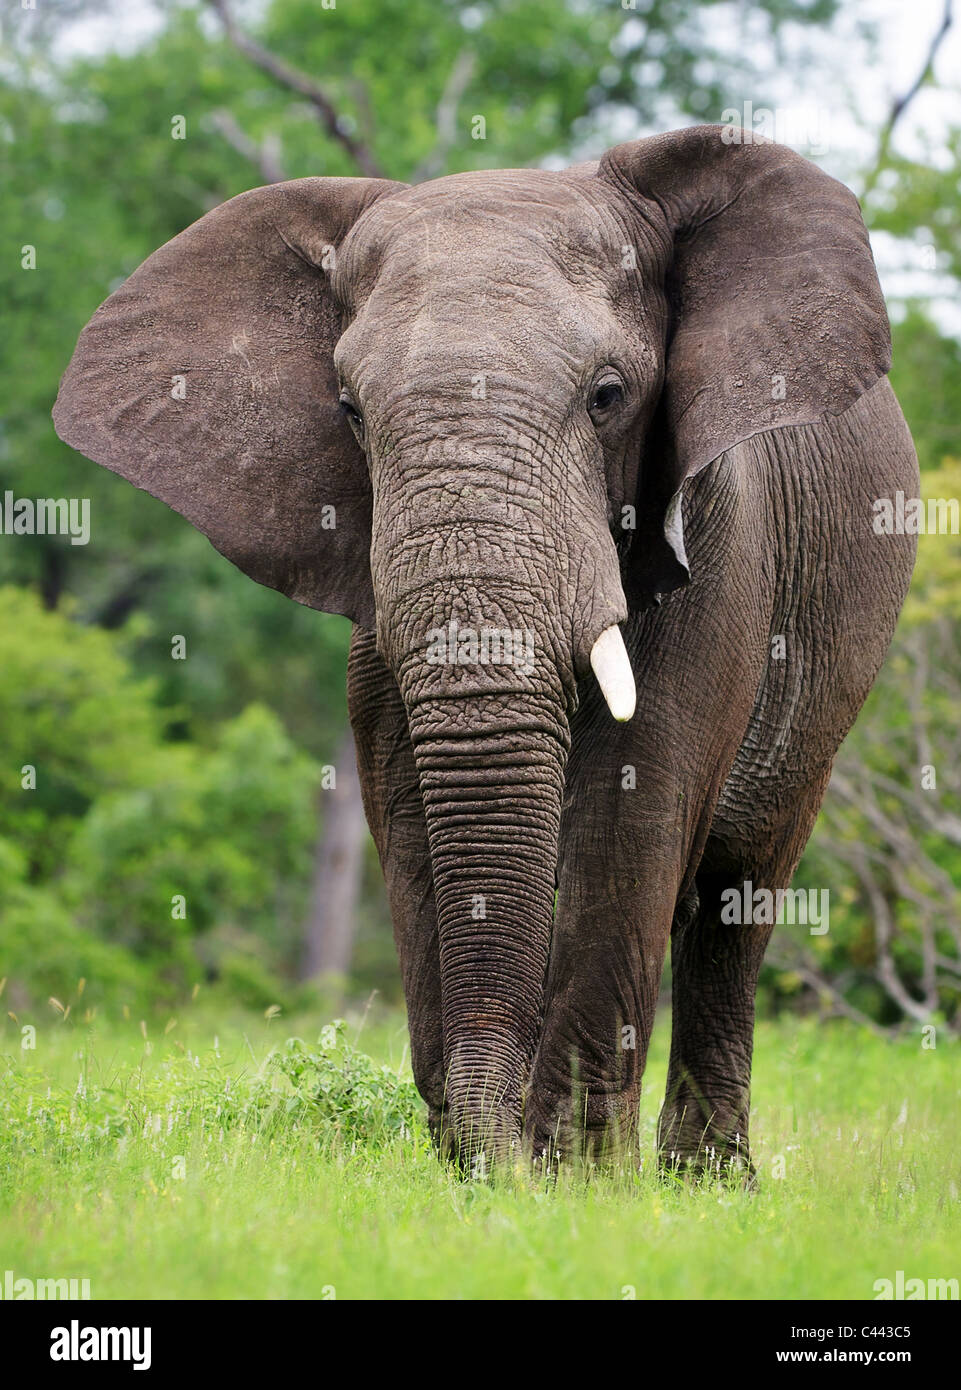 Elefante africano caminando sobre el pasto verde - Parque Nacional Kruger - Sudáfrica Foto de stock